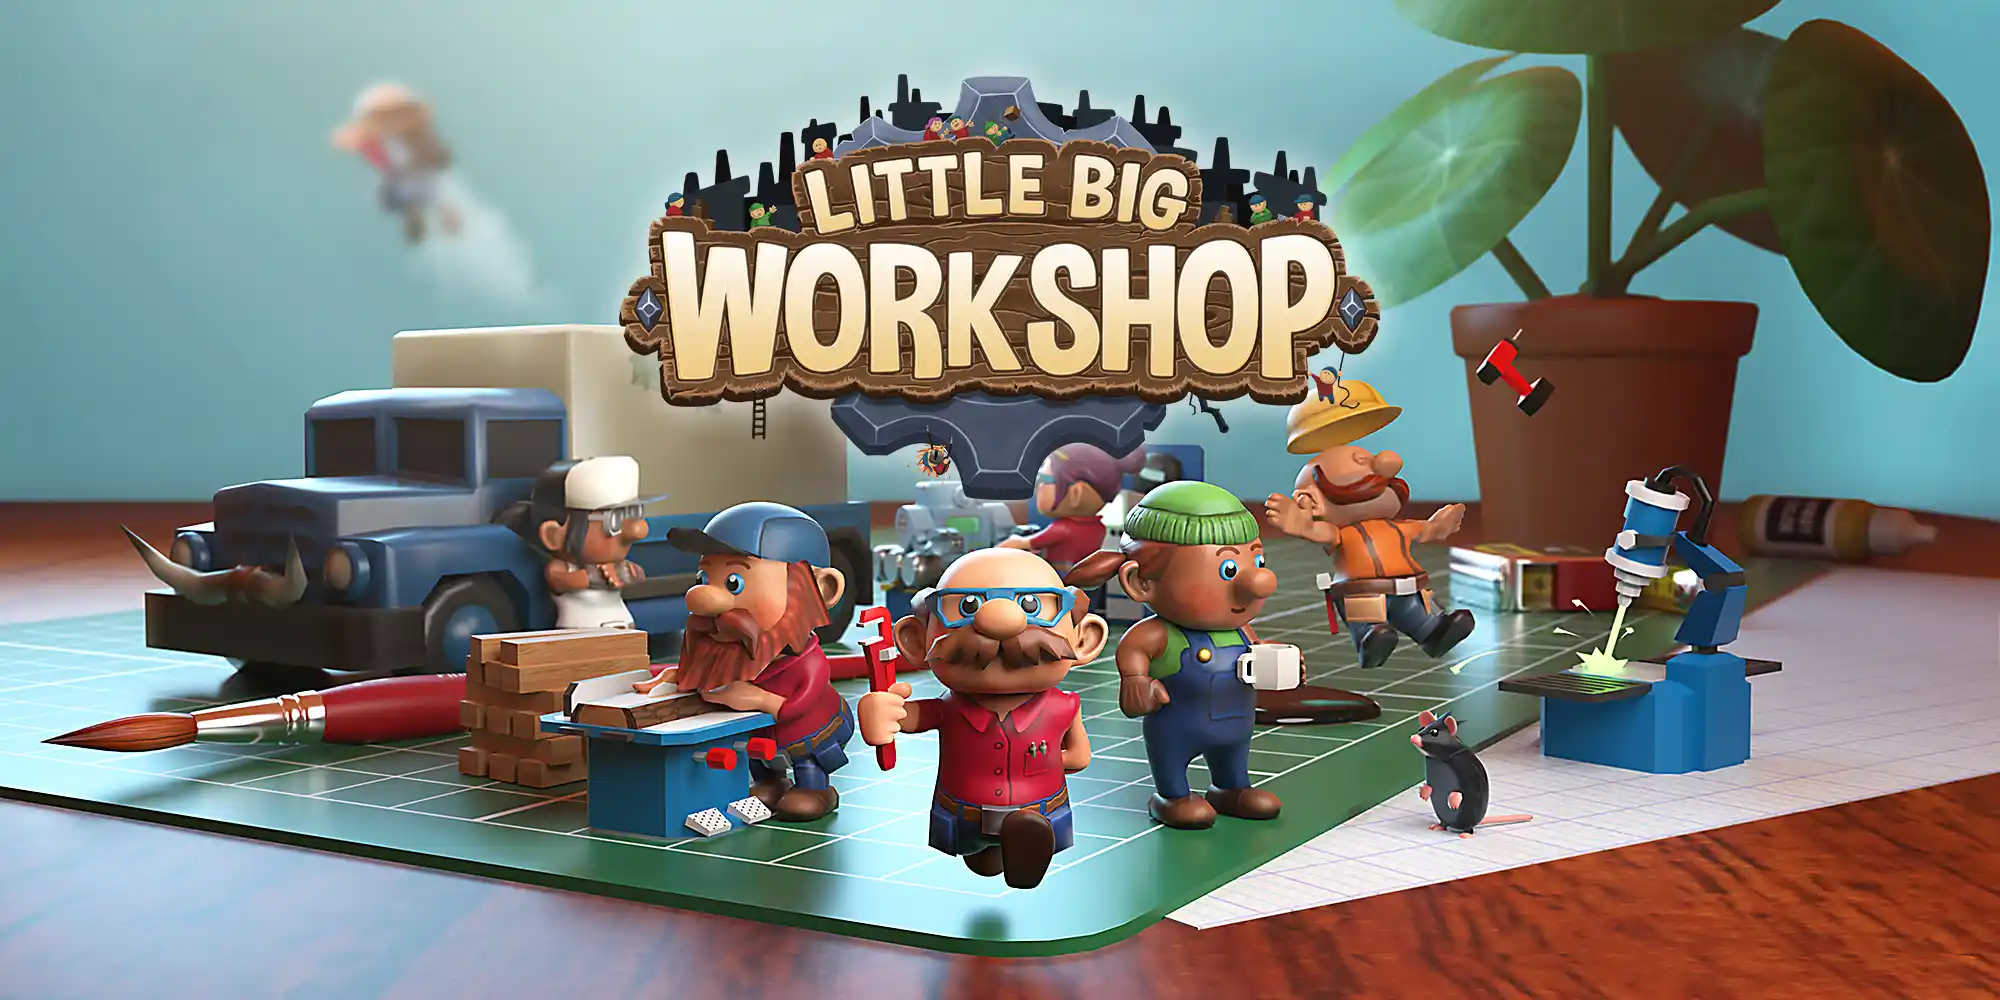 Little Big Workshop arribarà als dispositius mòbils